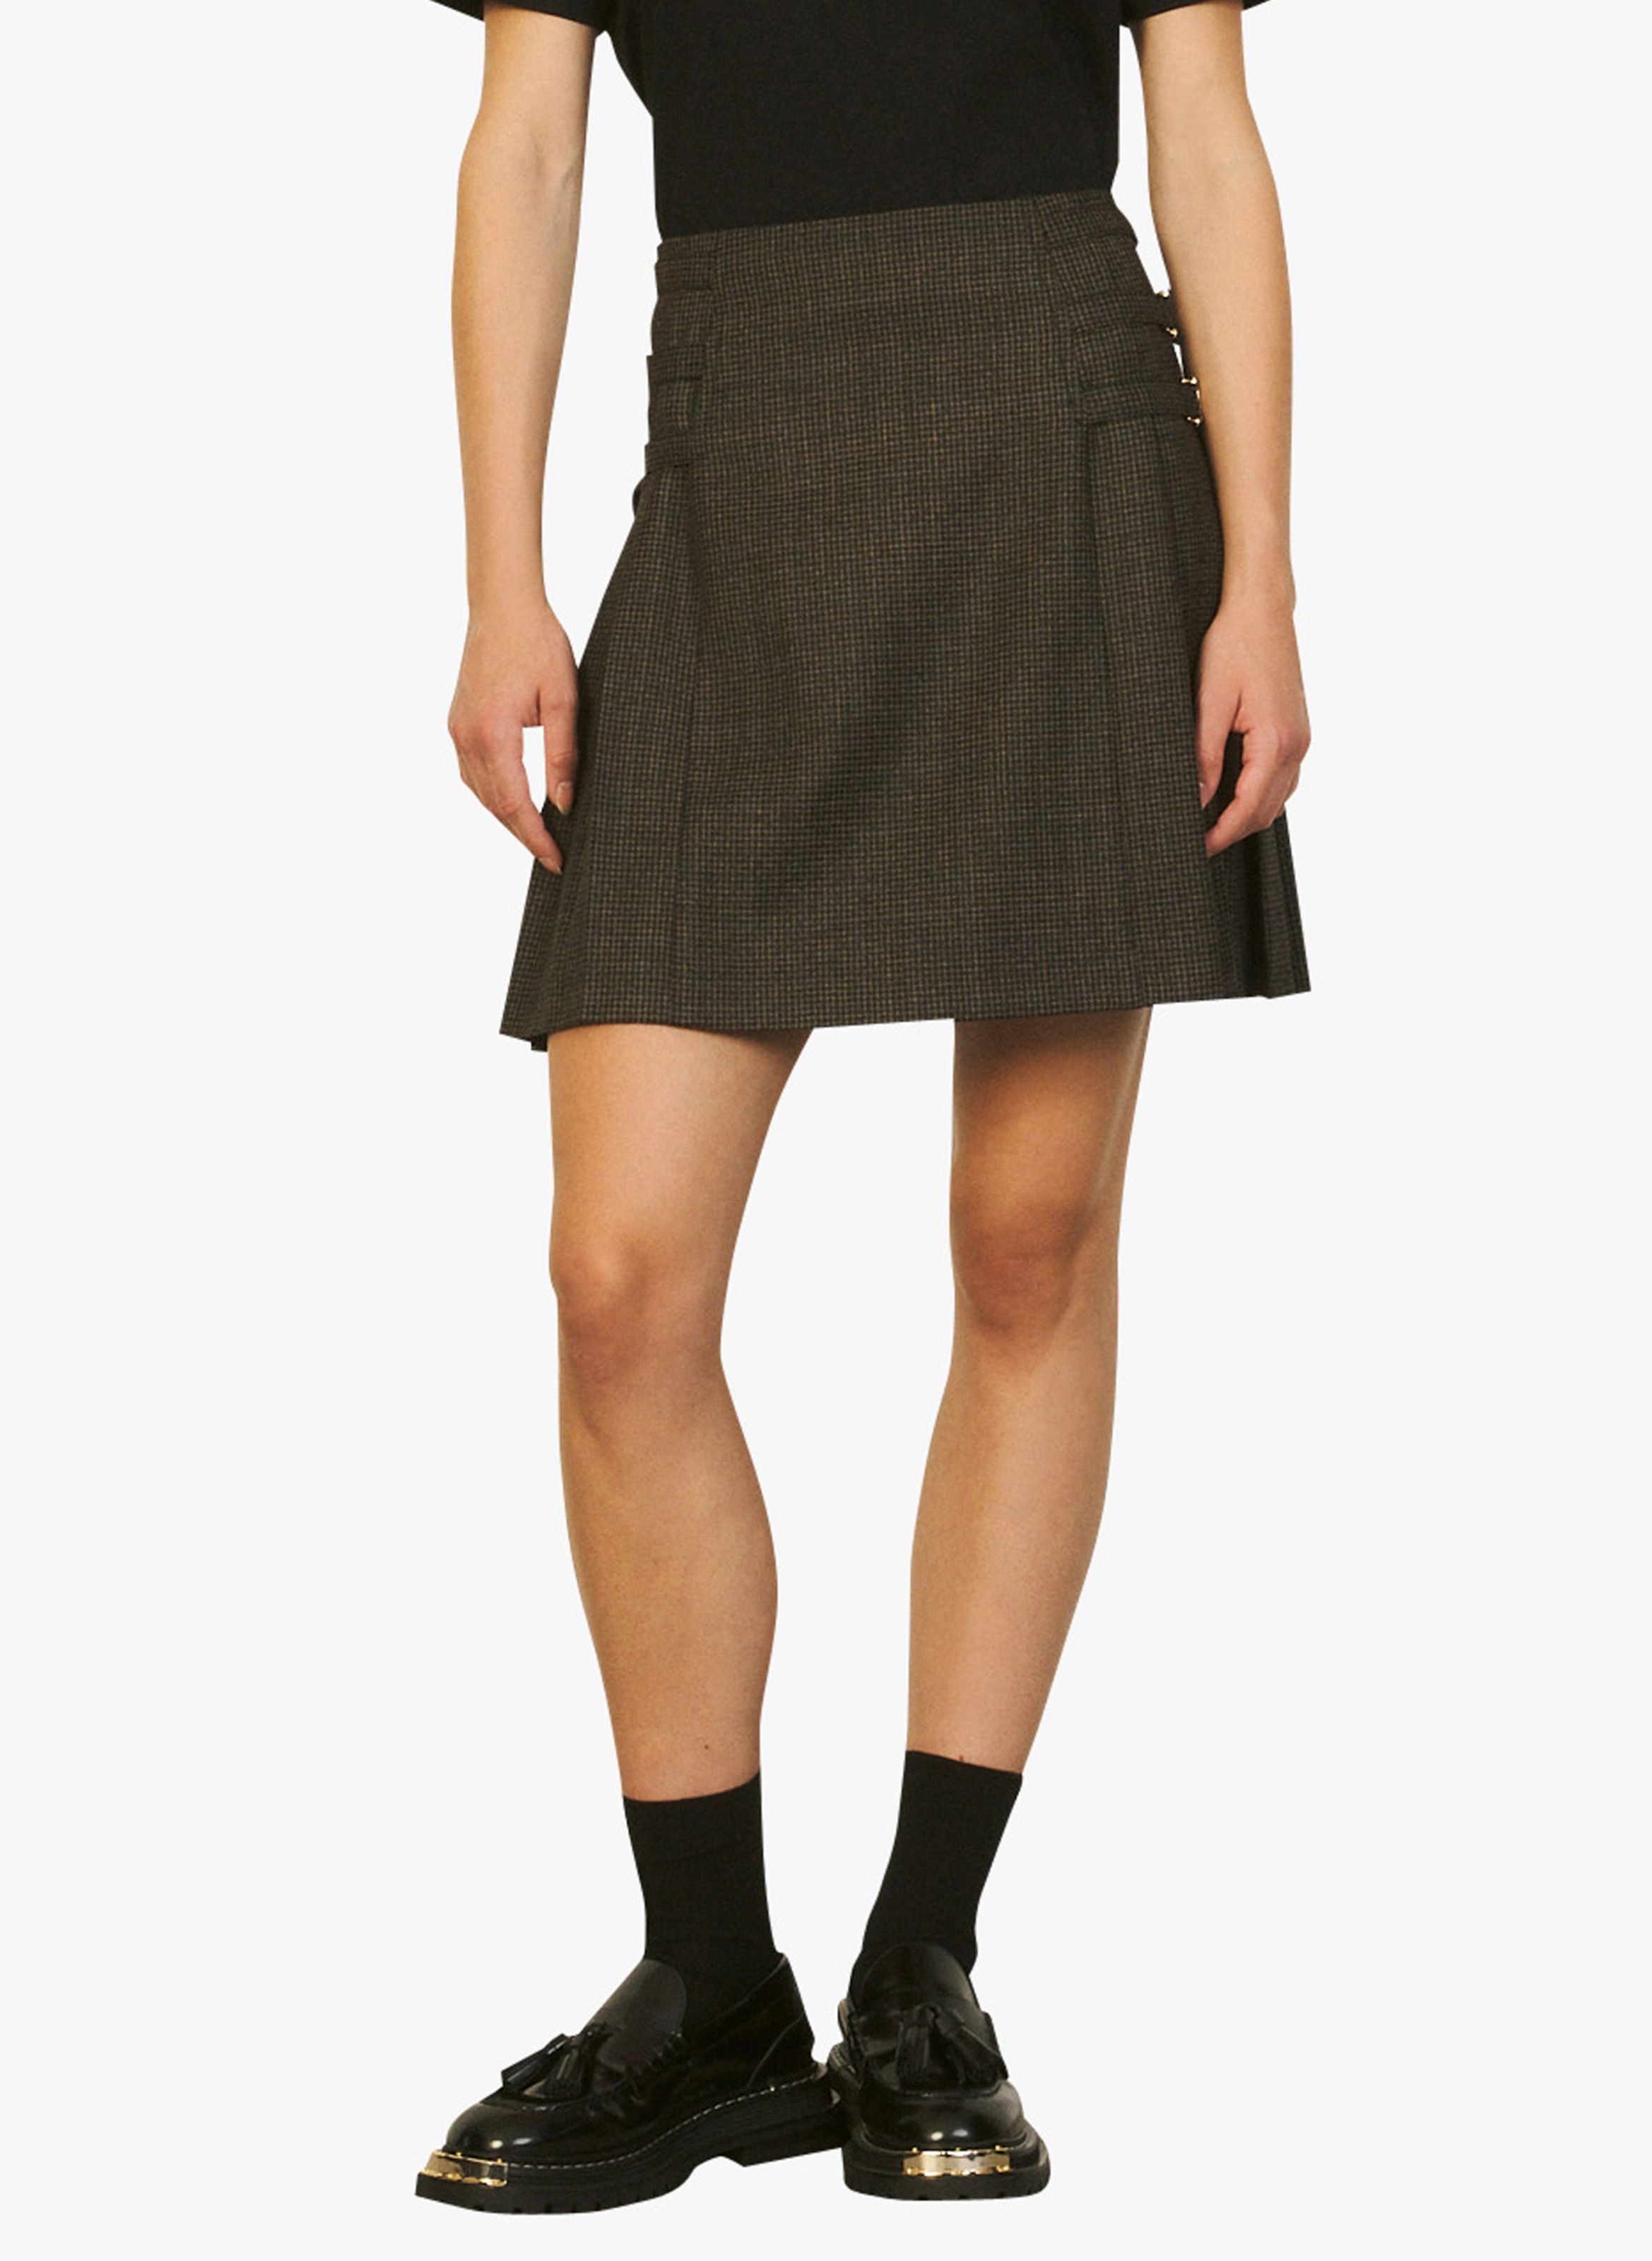 houndstooth pleated mini skirt